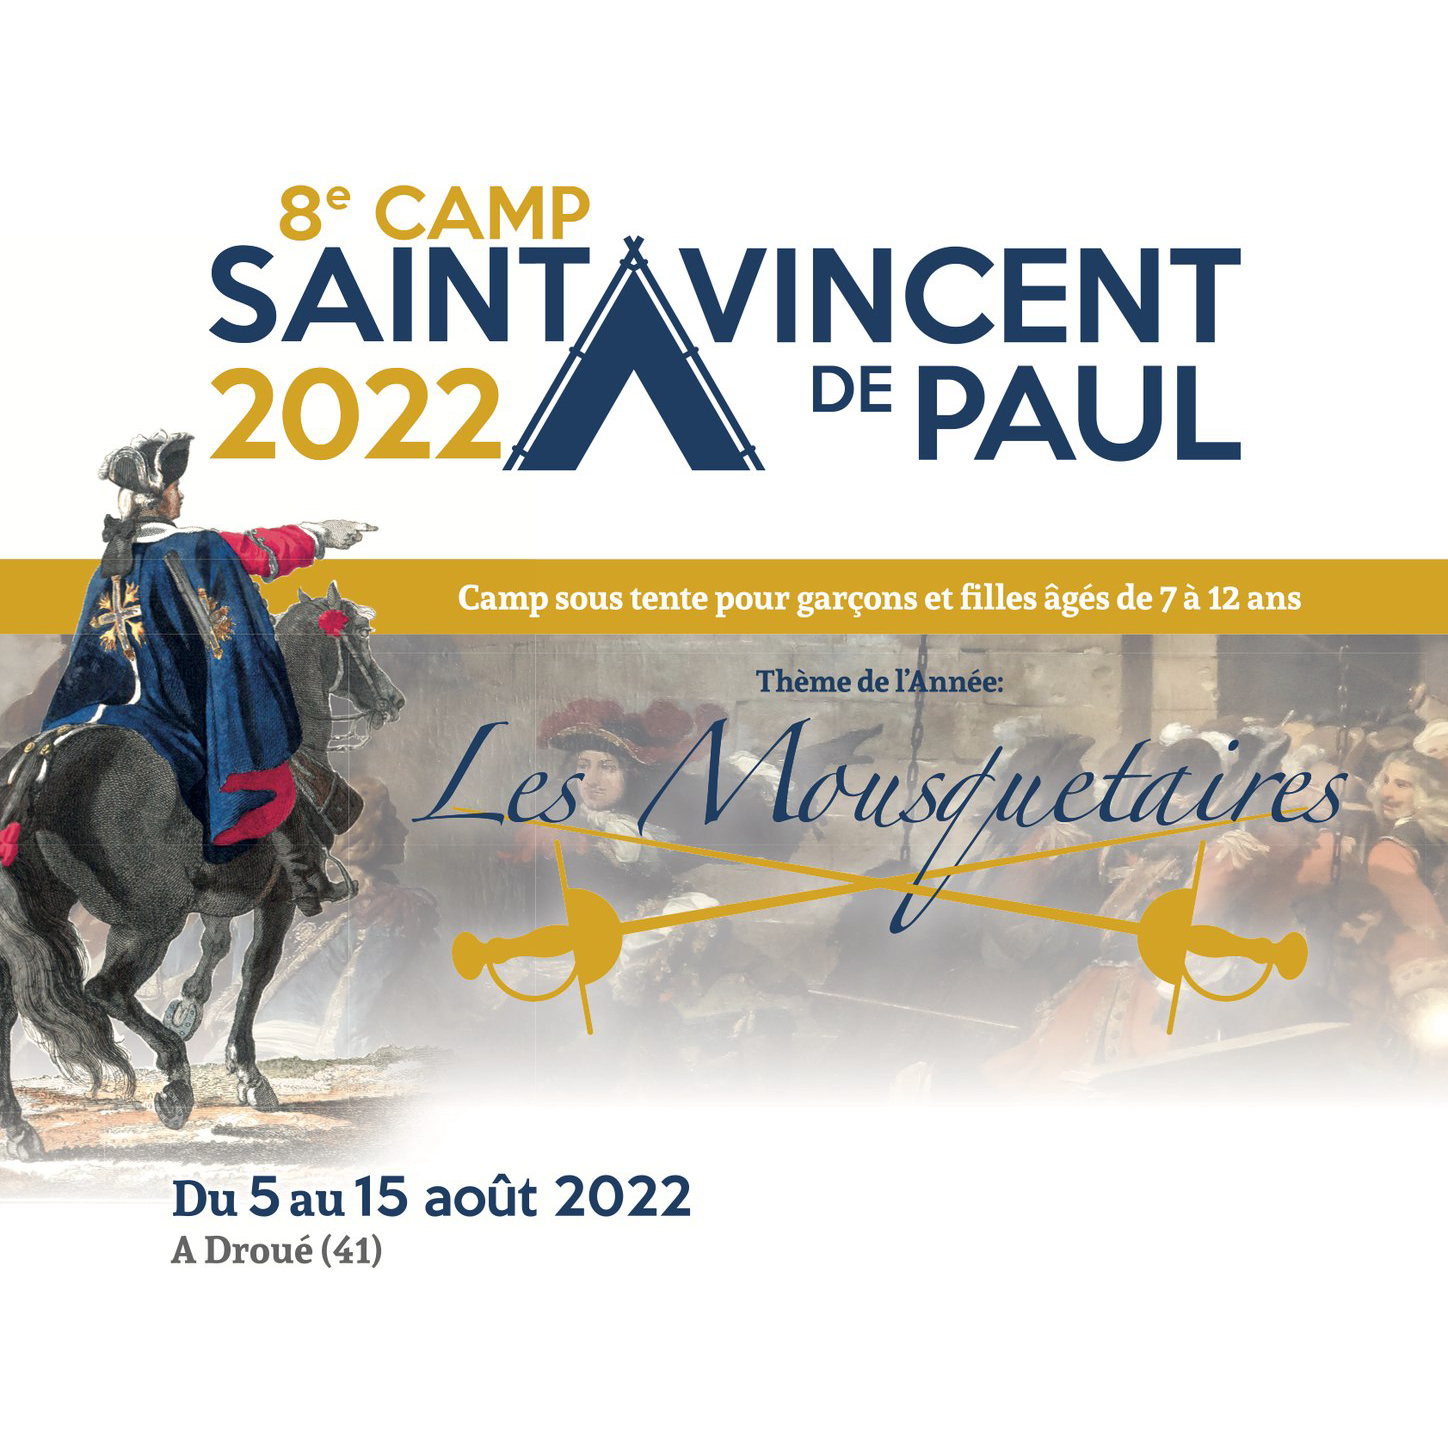 Camp Saint Vincent de Paul 2022